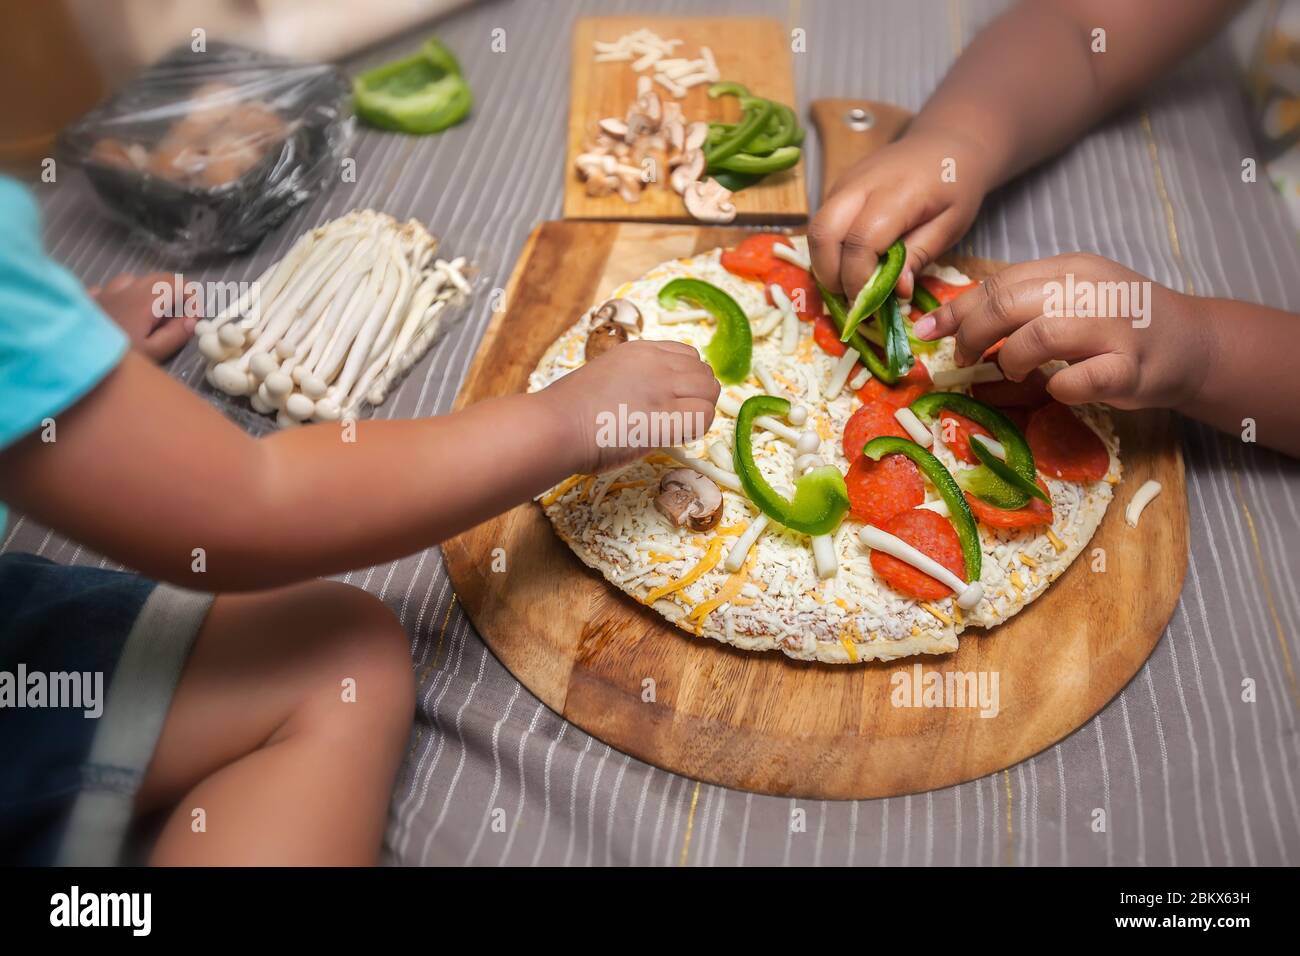 Los niños agregan ingredientes frescos a una pizza de queso congelado en una cáscara de pizza de madera. Foto de stock